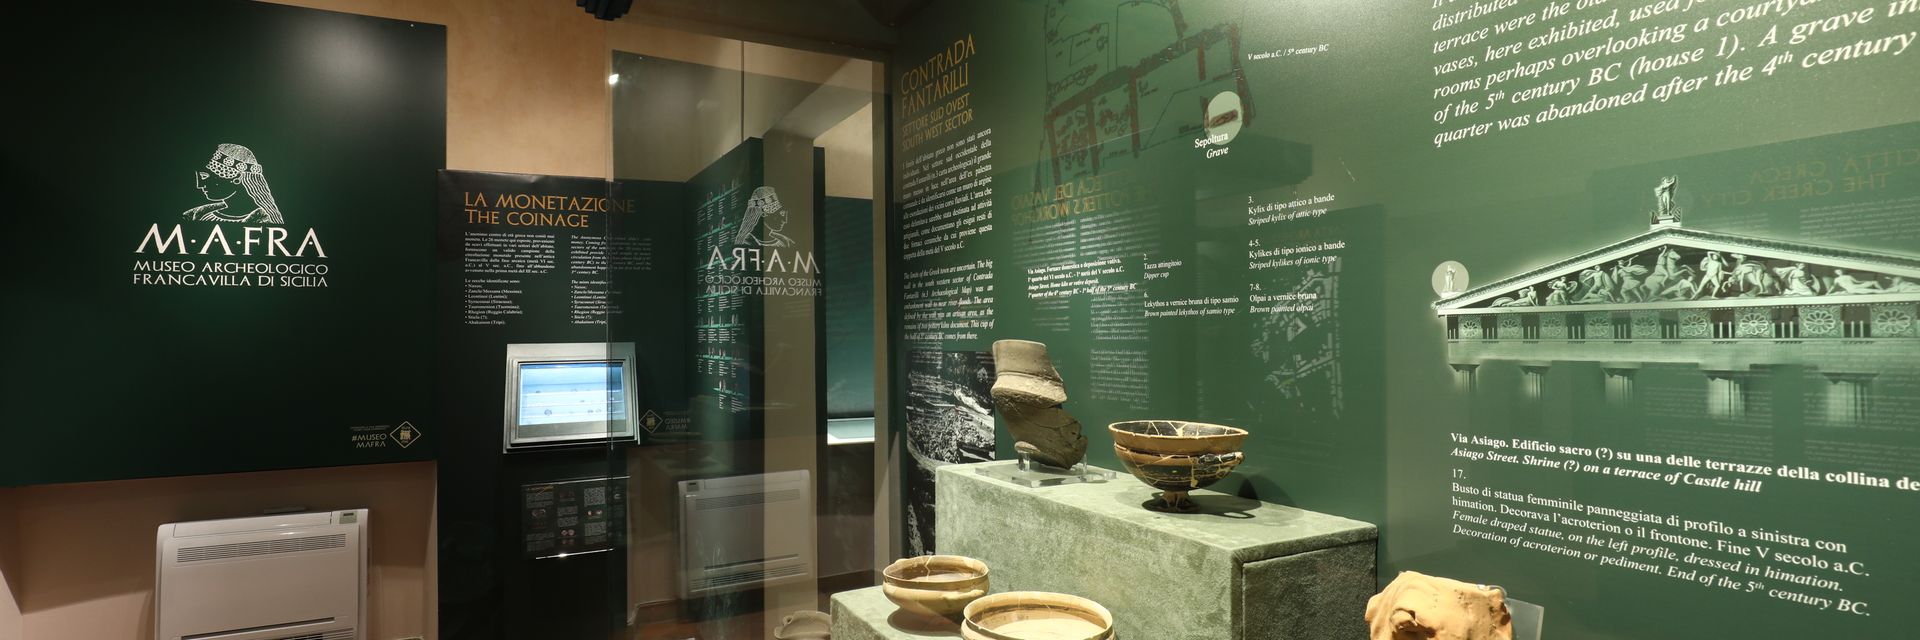 MAFRA - Museo Archeologico di Francavilla di Sicilia